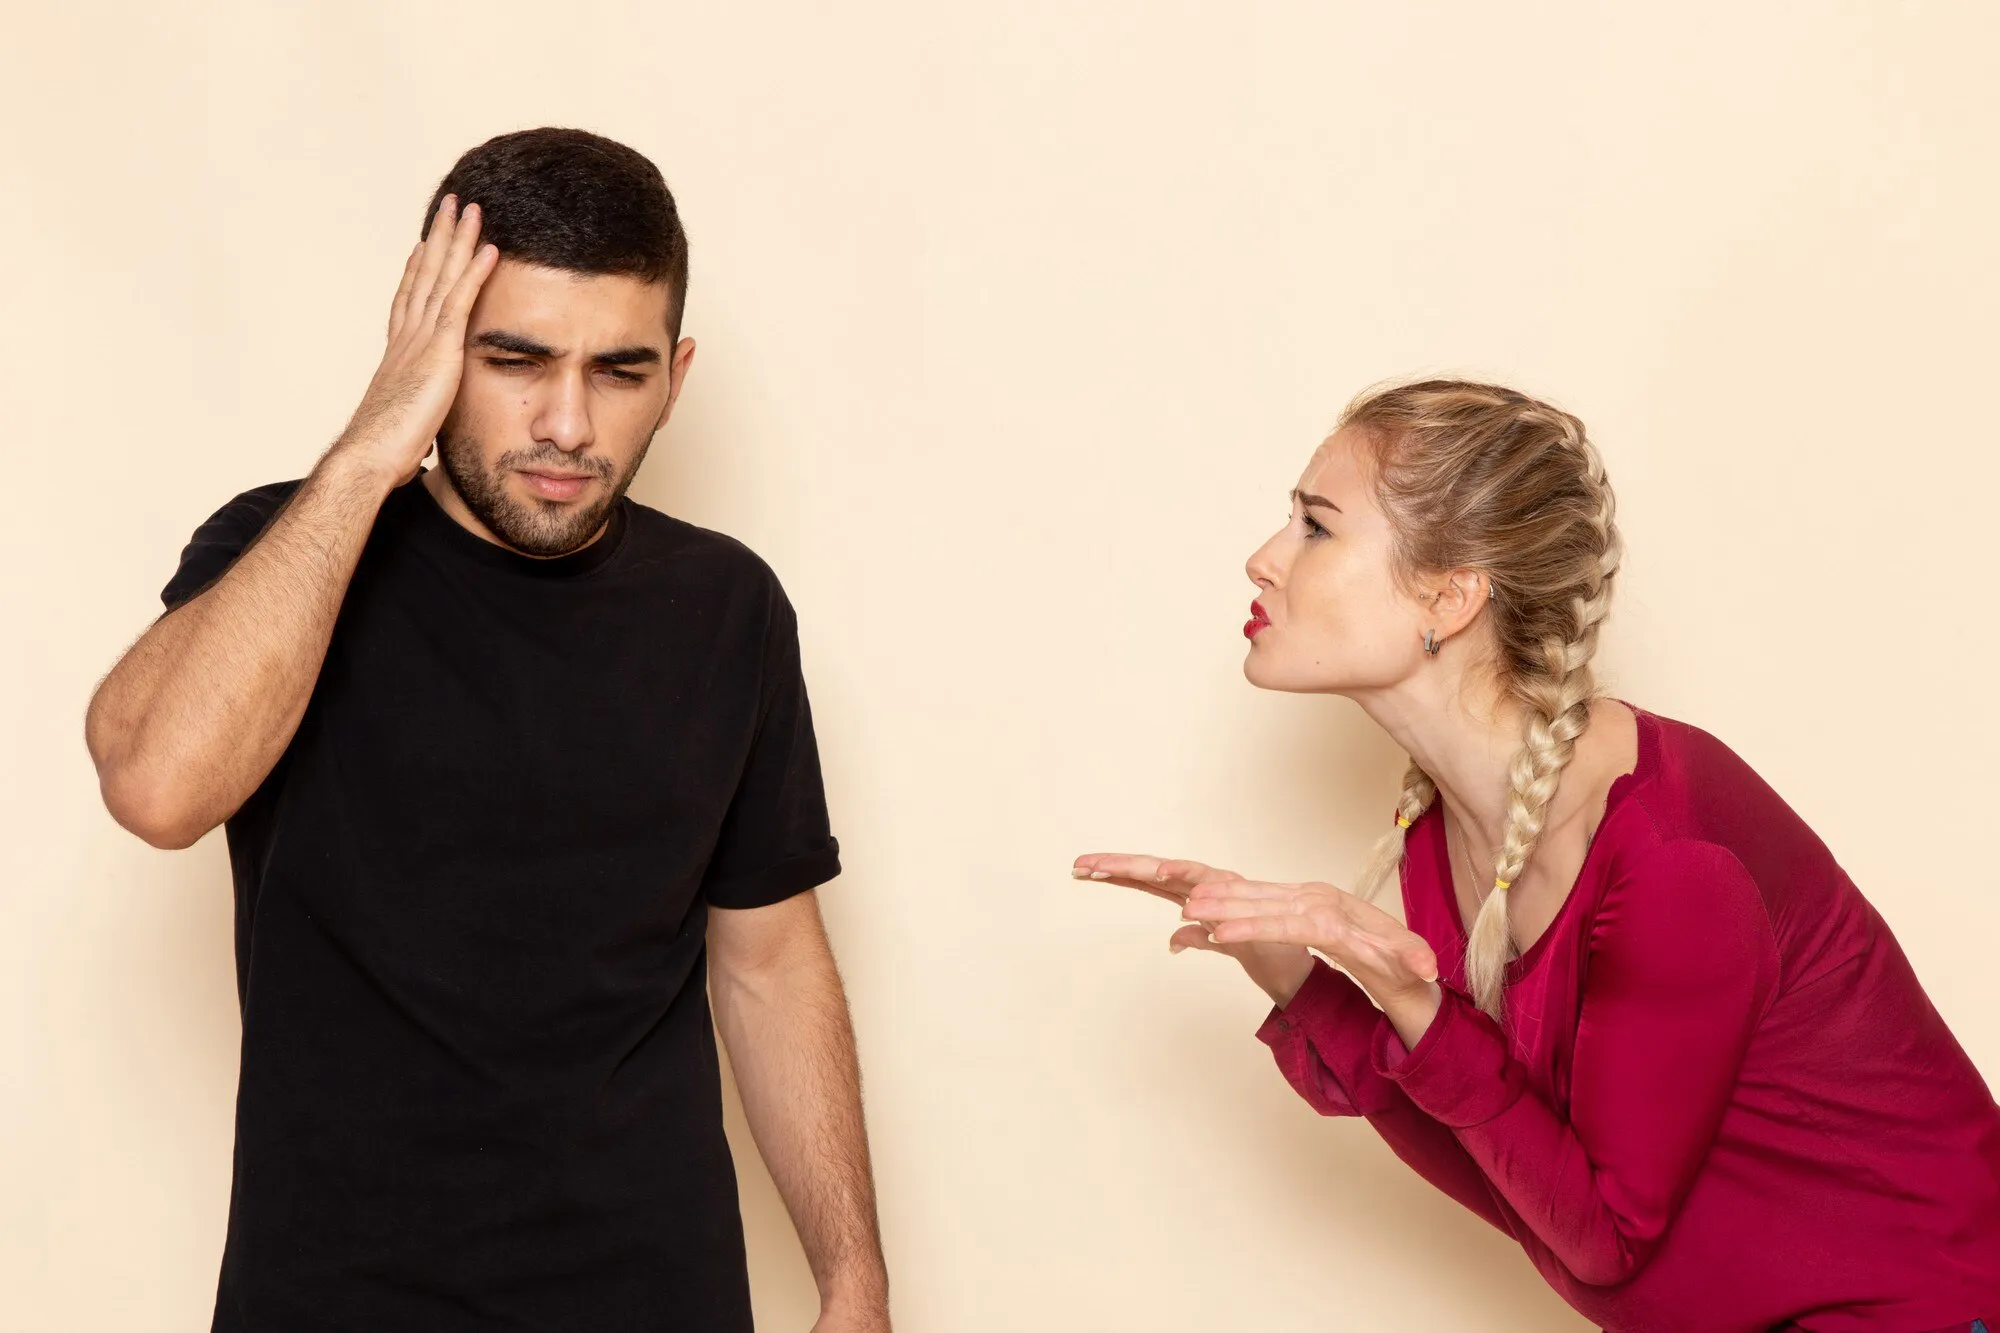 7 kleine dingen die vrouwen irriteren aan mannen